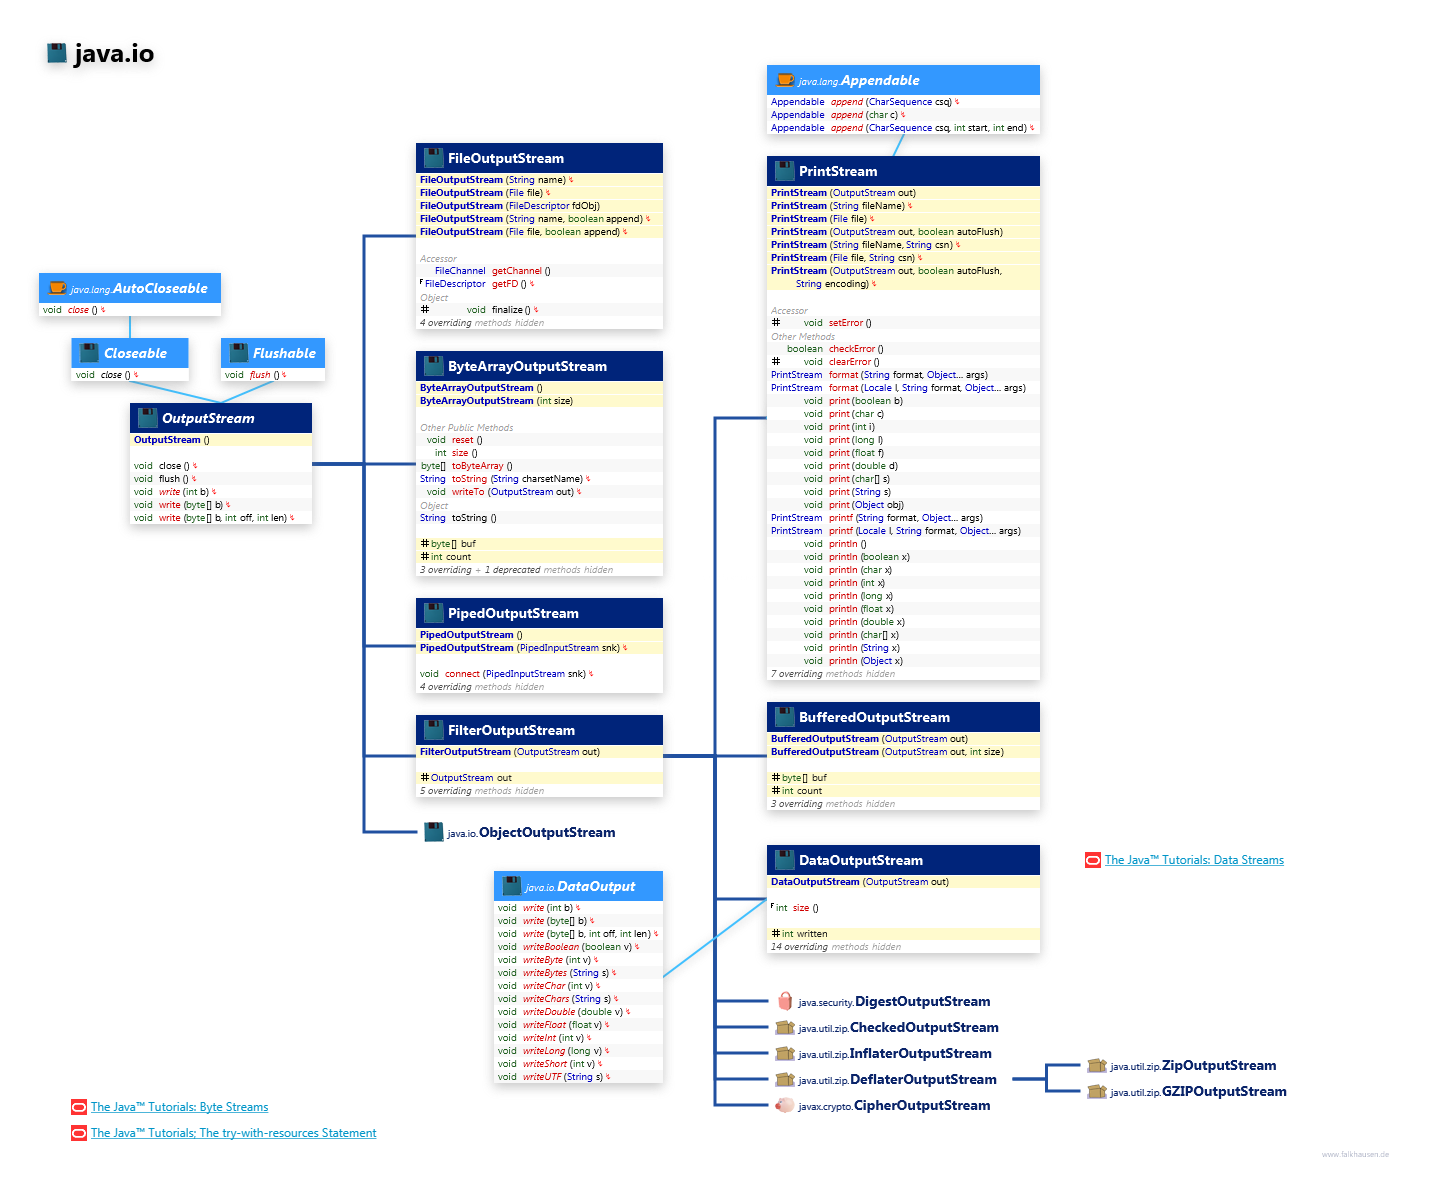 java.io OutputStream class diagram and api documentation for Java 8